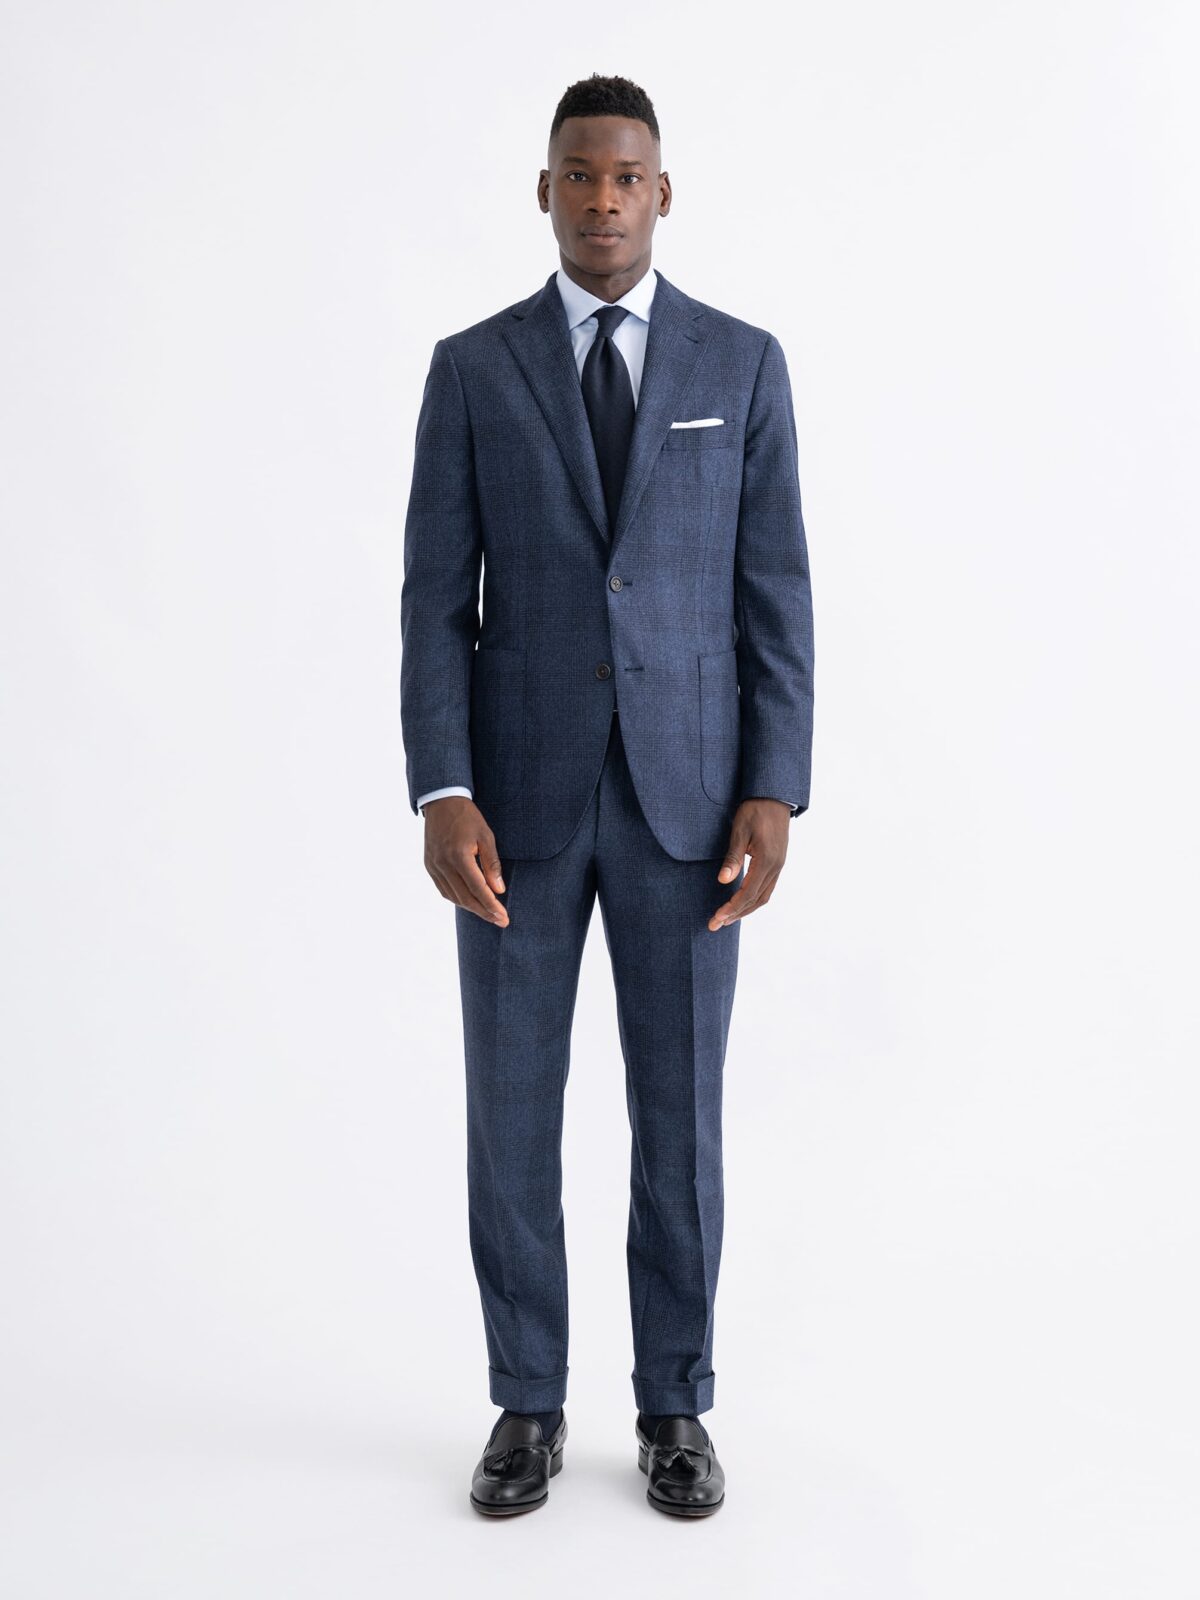 Men's Suits  Custom Suits - Proper Cloth